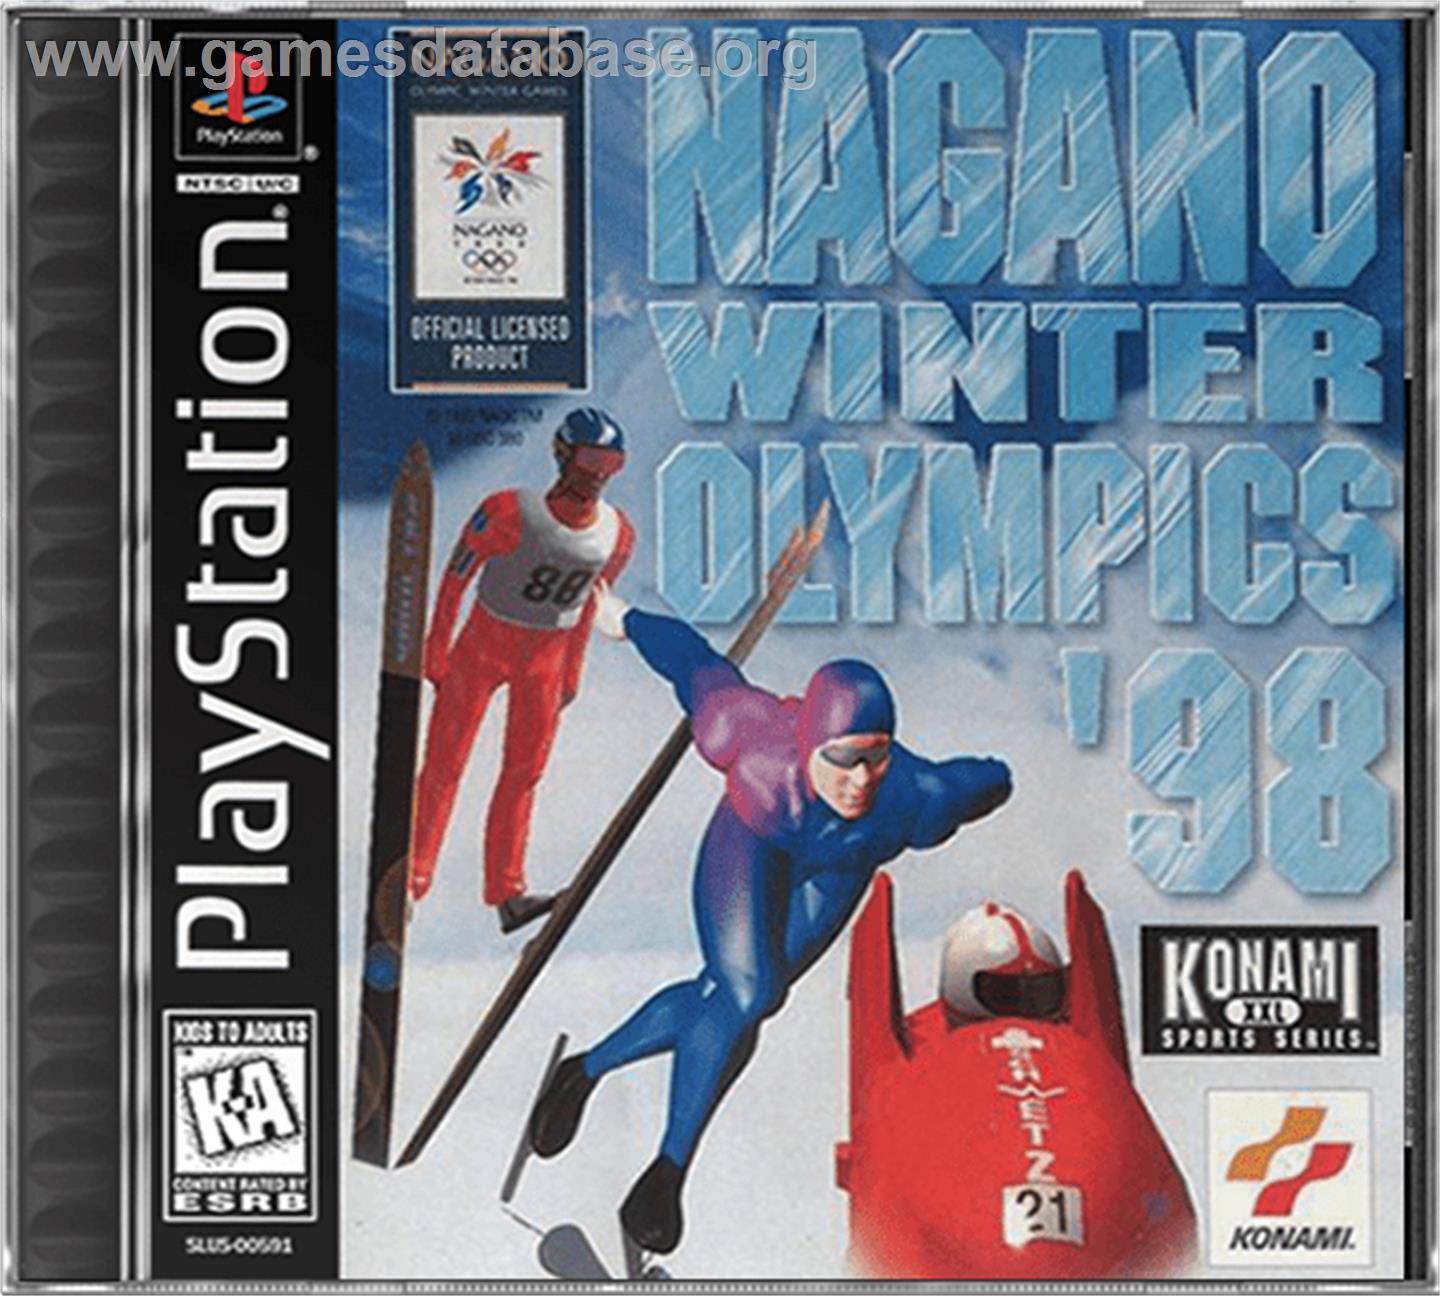 Nagano Winter Olympics '98 - Sony Playstation - Artwork - Box